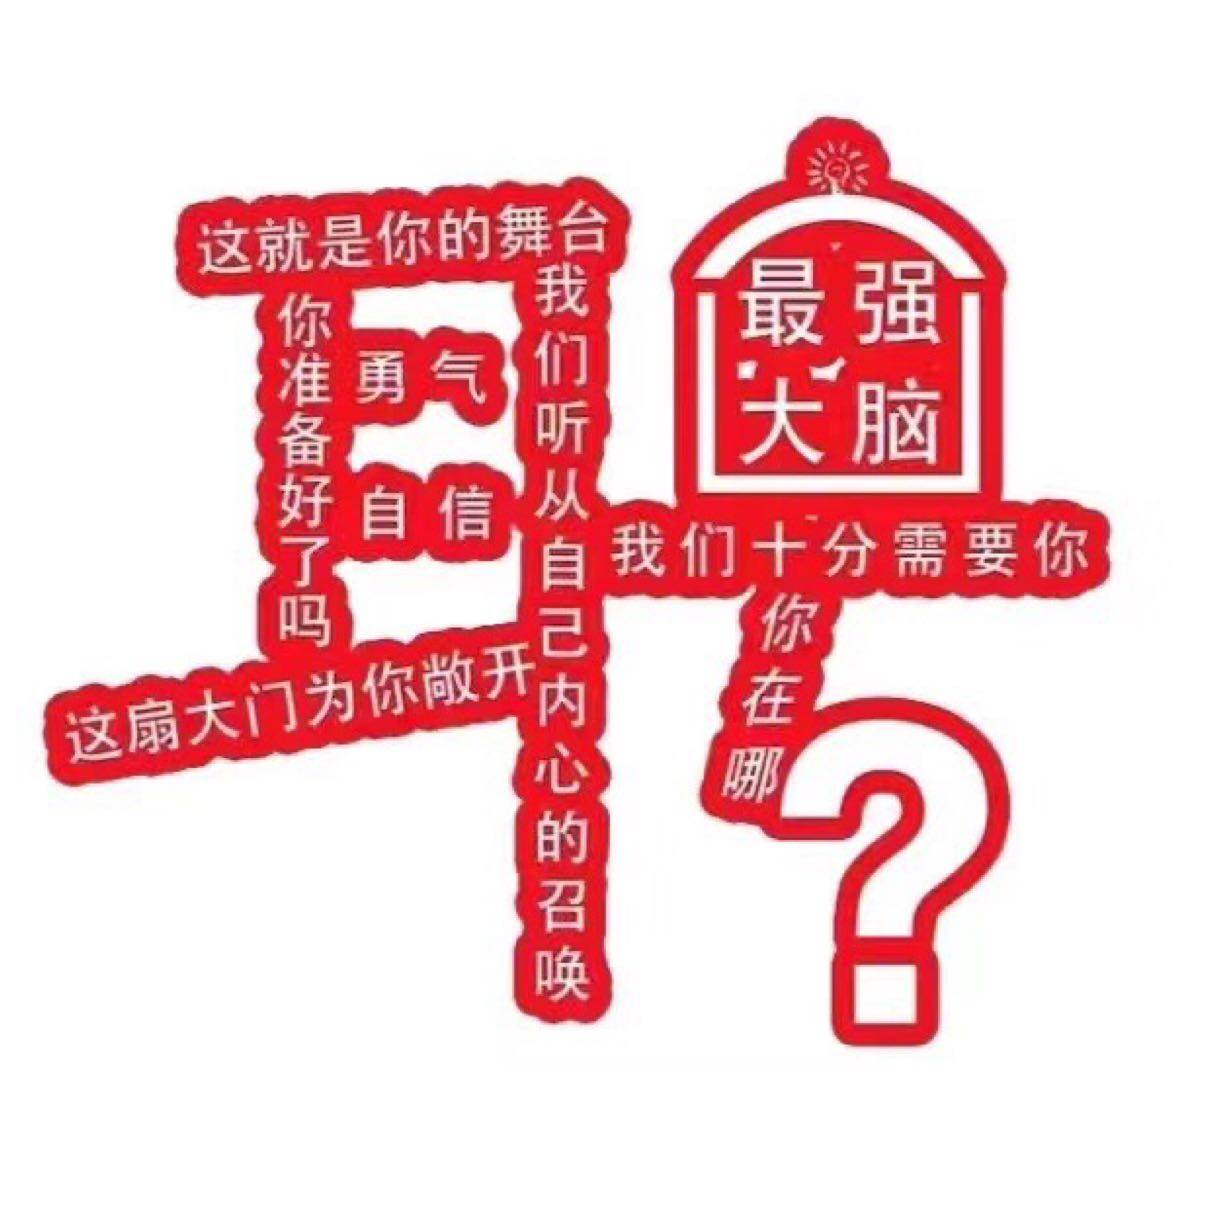 东莞家优盟品牌运营管理有限公司logo